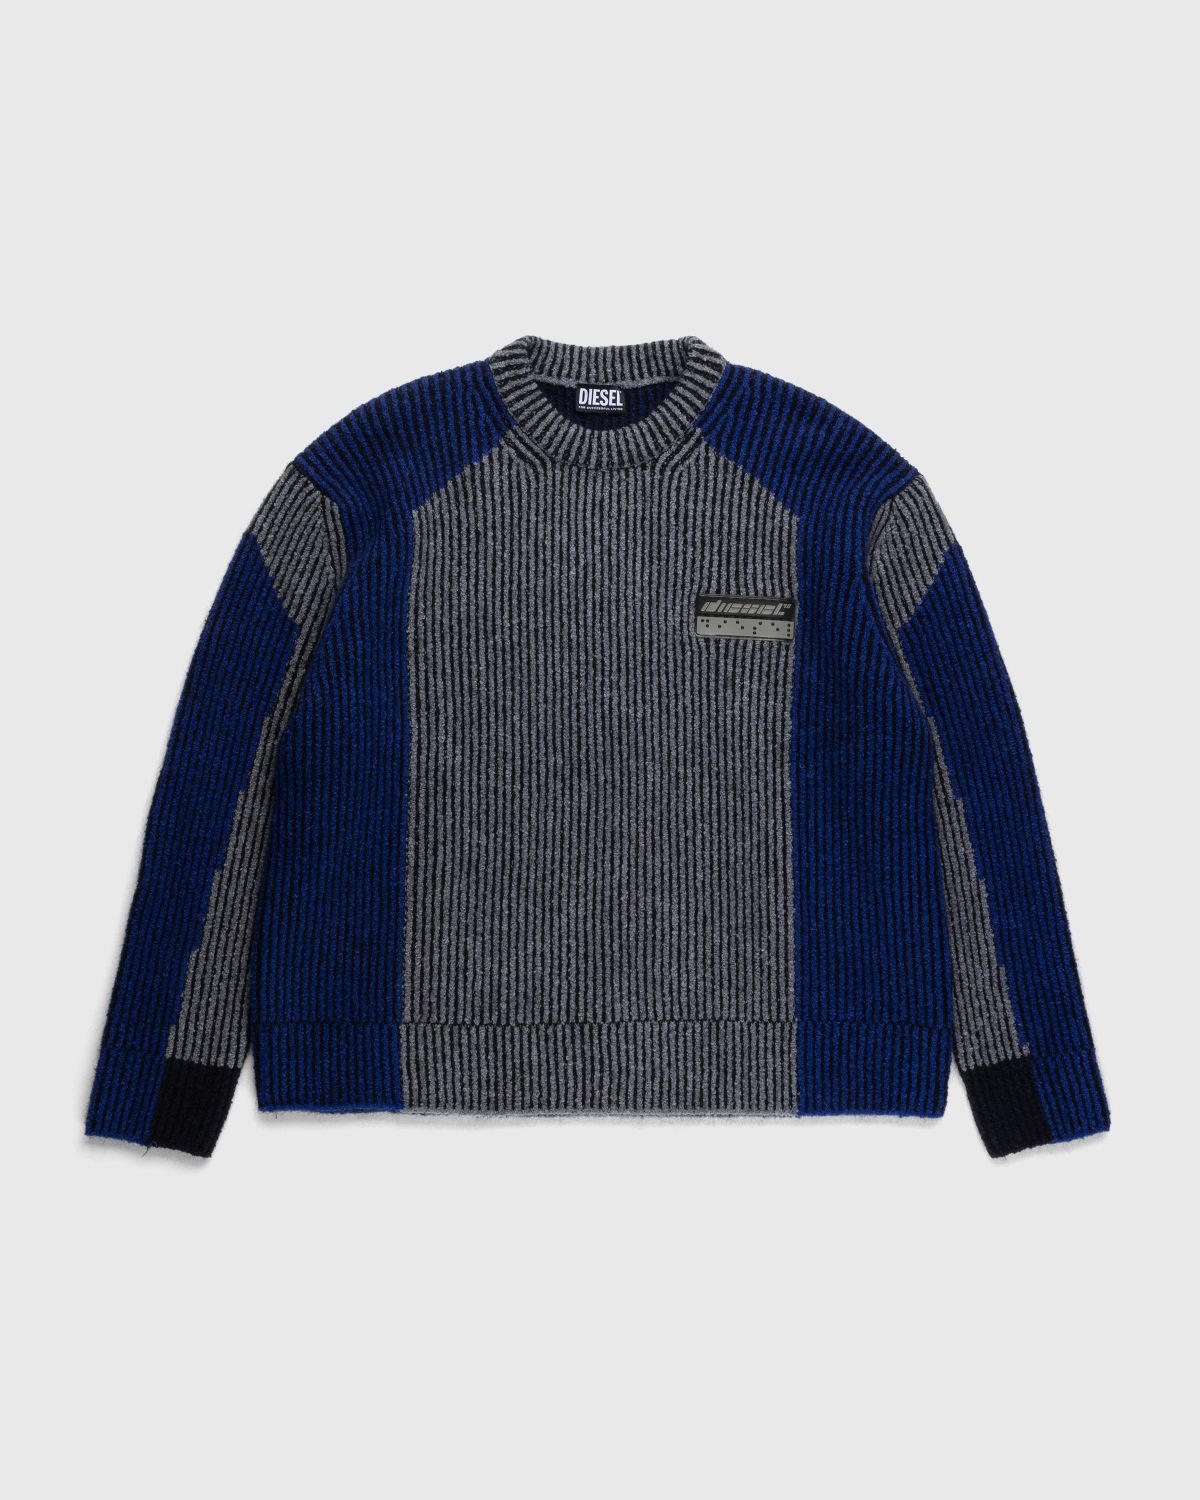 Diesel – Raig Sweater Blue | Highsnobiety Shop